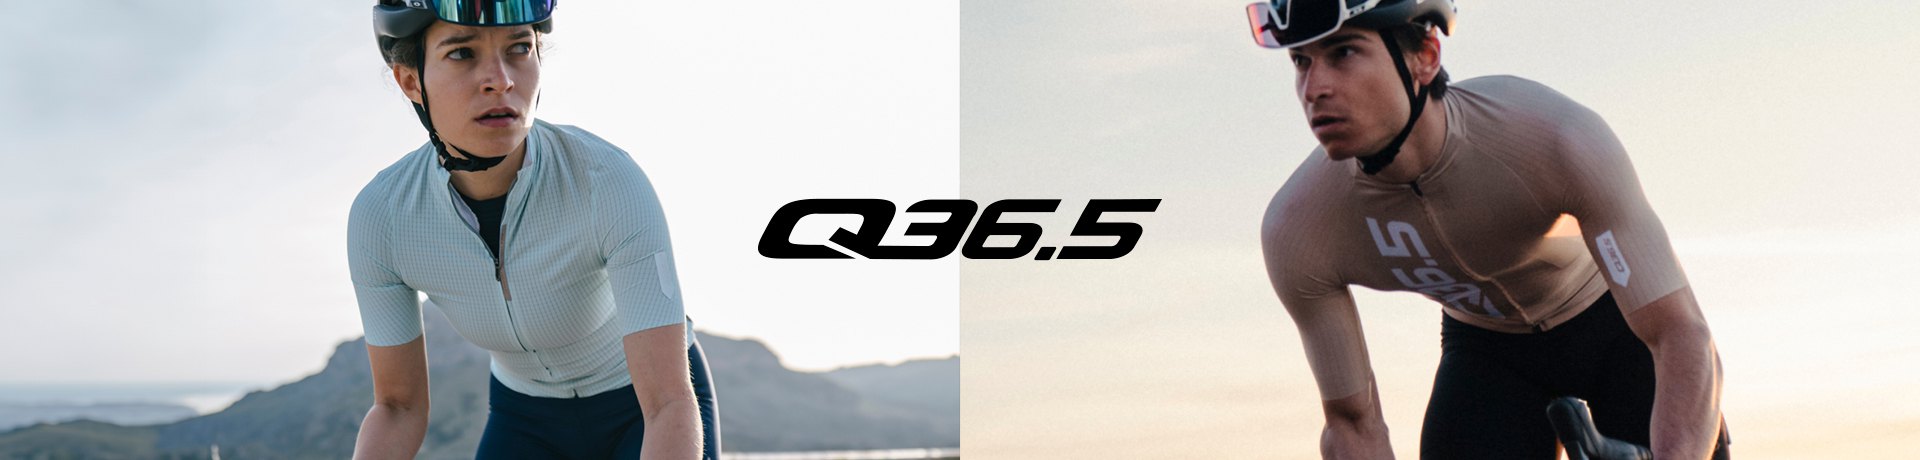 Q36.5